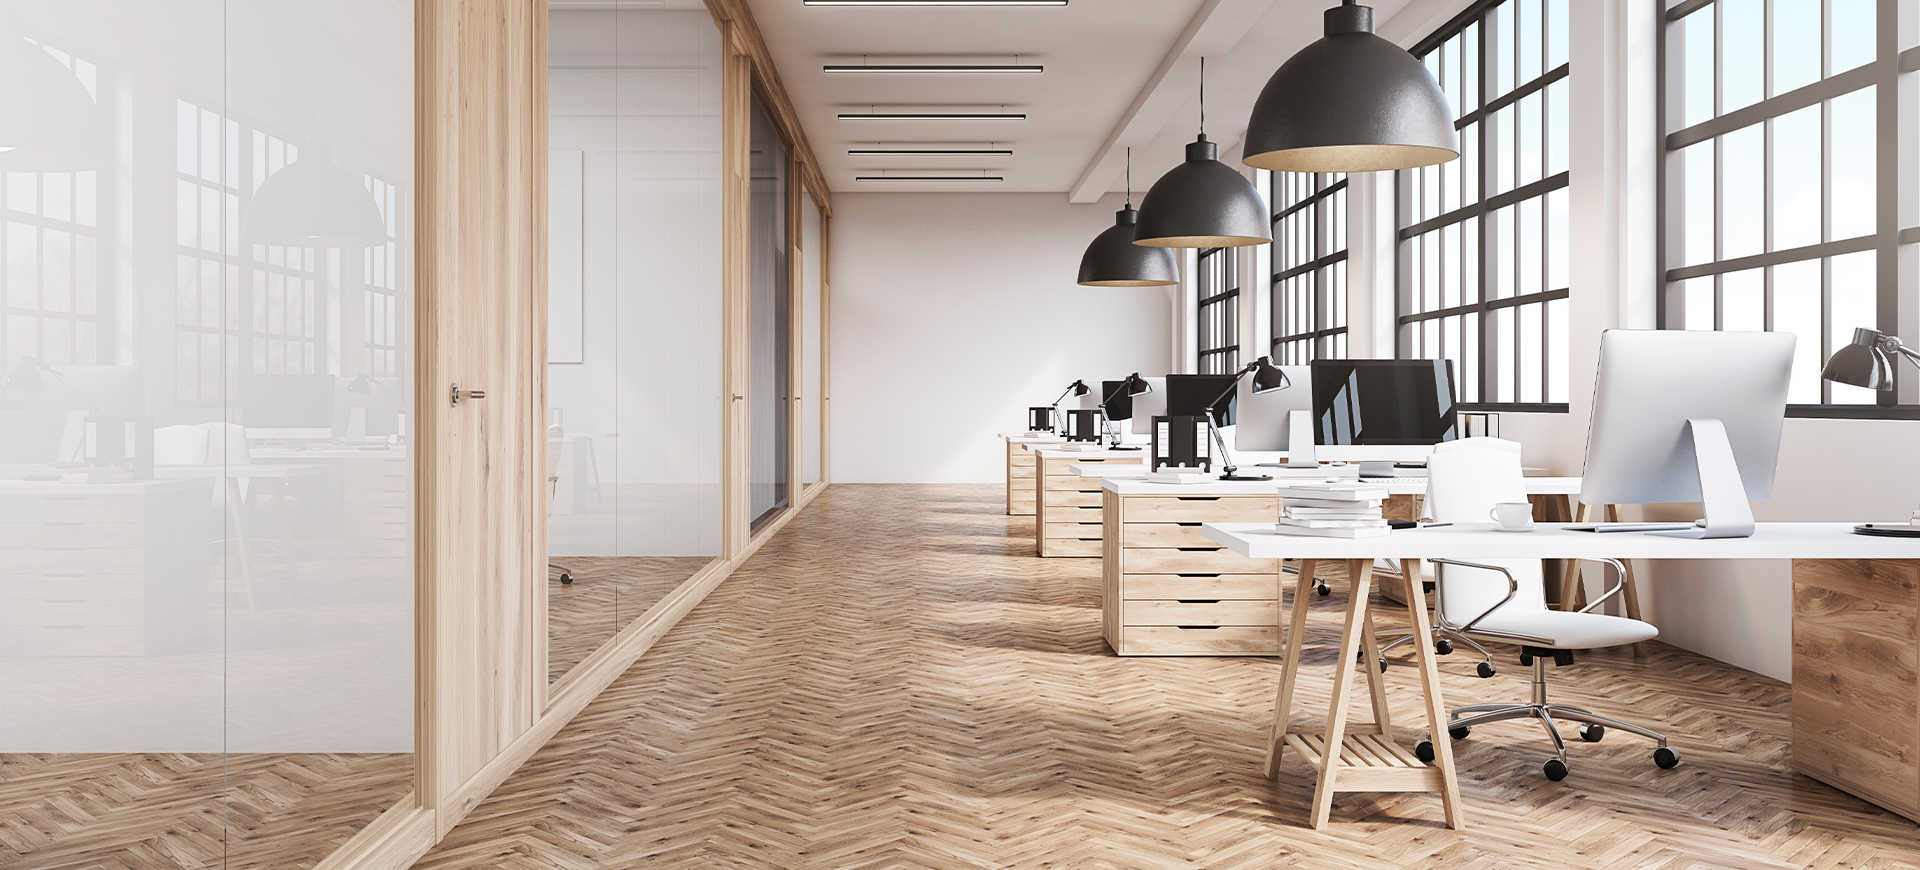 Offenes Großraumbüro mit hellem Holzfußboden, weißen Schreibtischen und industriellen Metallfensterrahmen